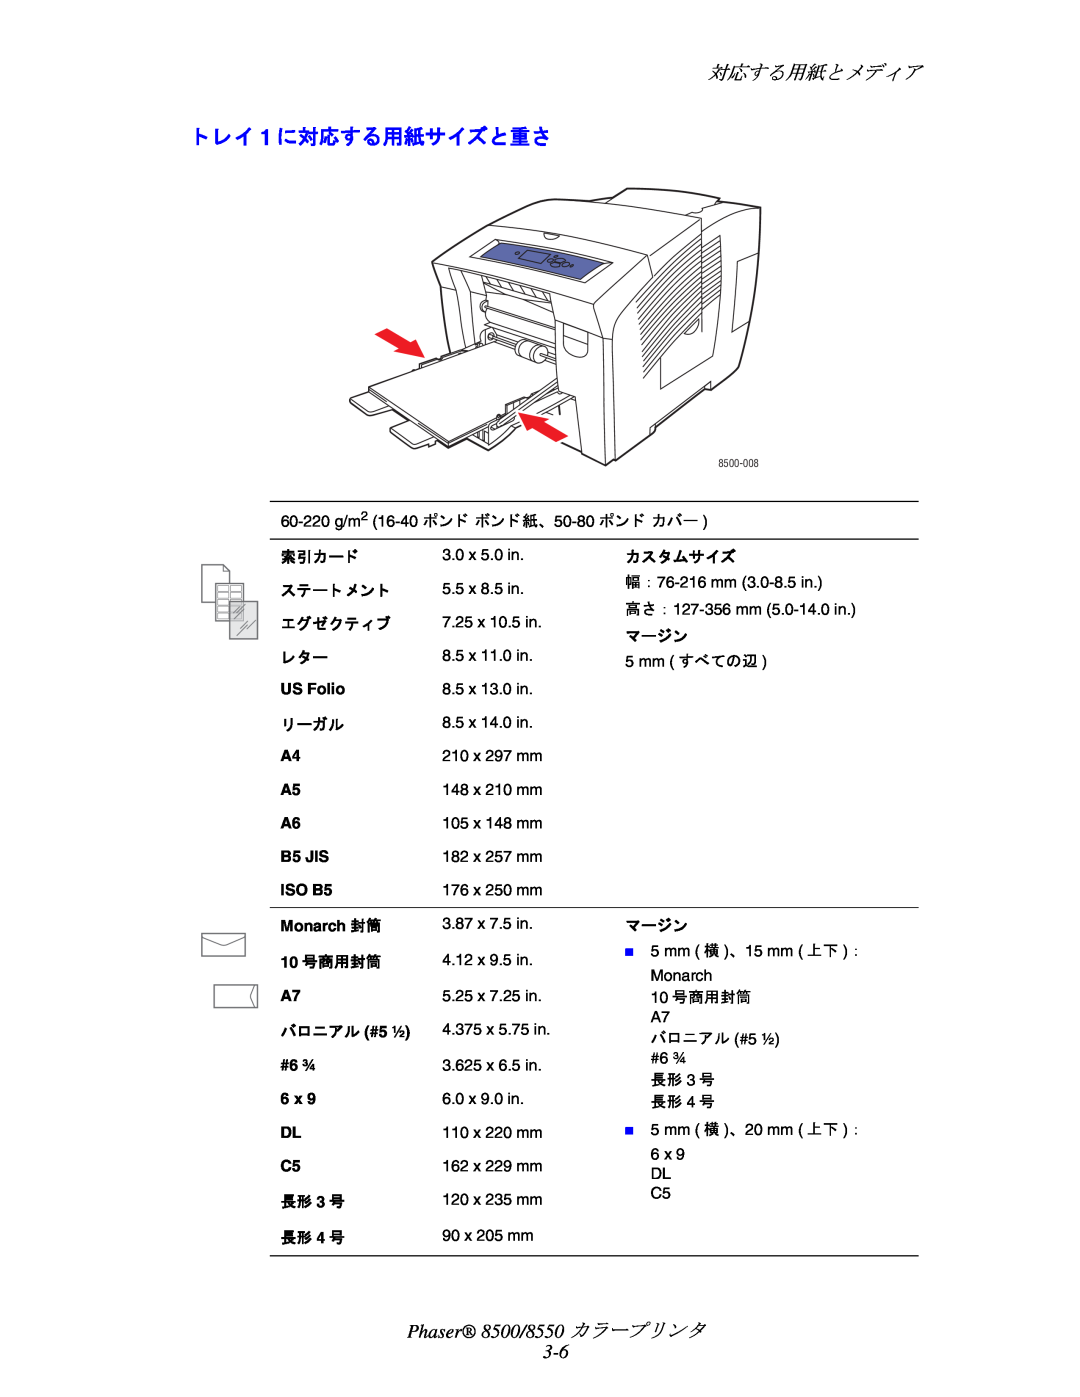 Xerox manual ト レイ 1 に対応する用紙サイズと重さ, 対応する用紙と メデ ィ ア, Phaser 8500/8550 カ ラープ リ ン タ 3-6 